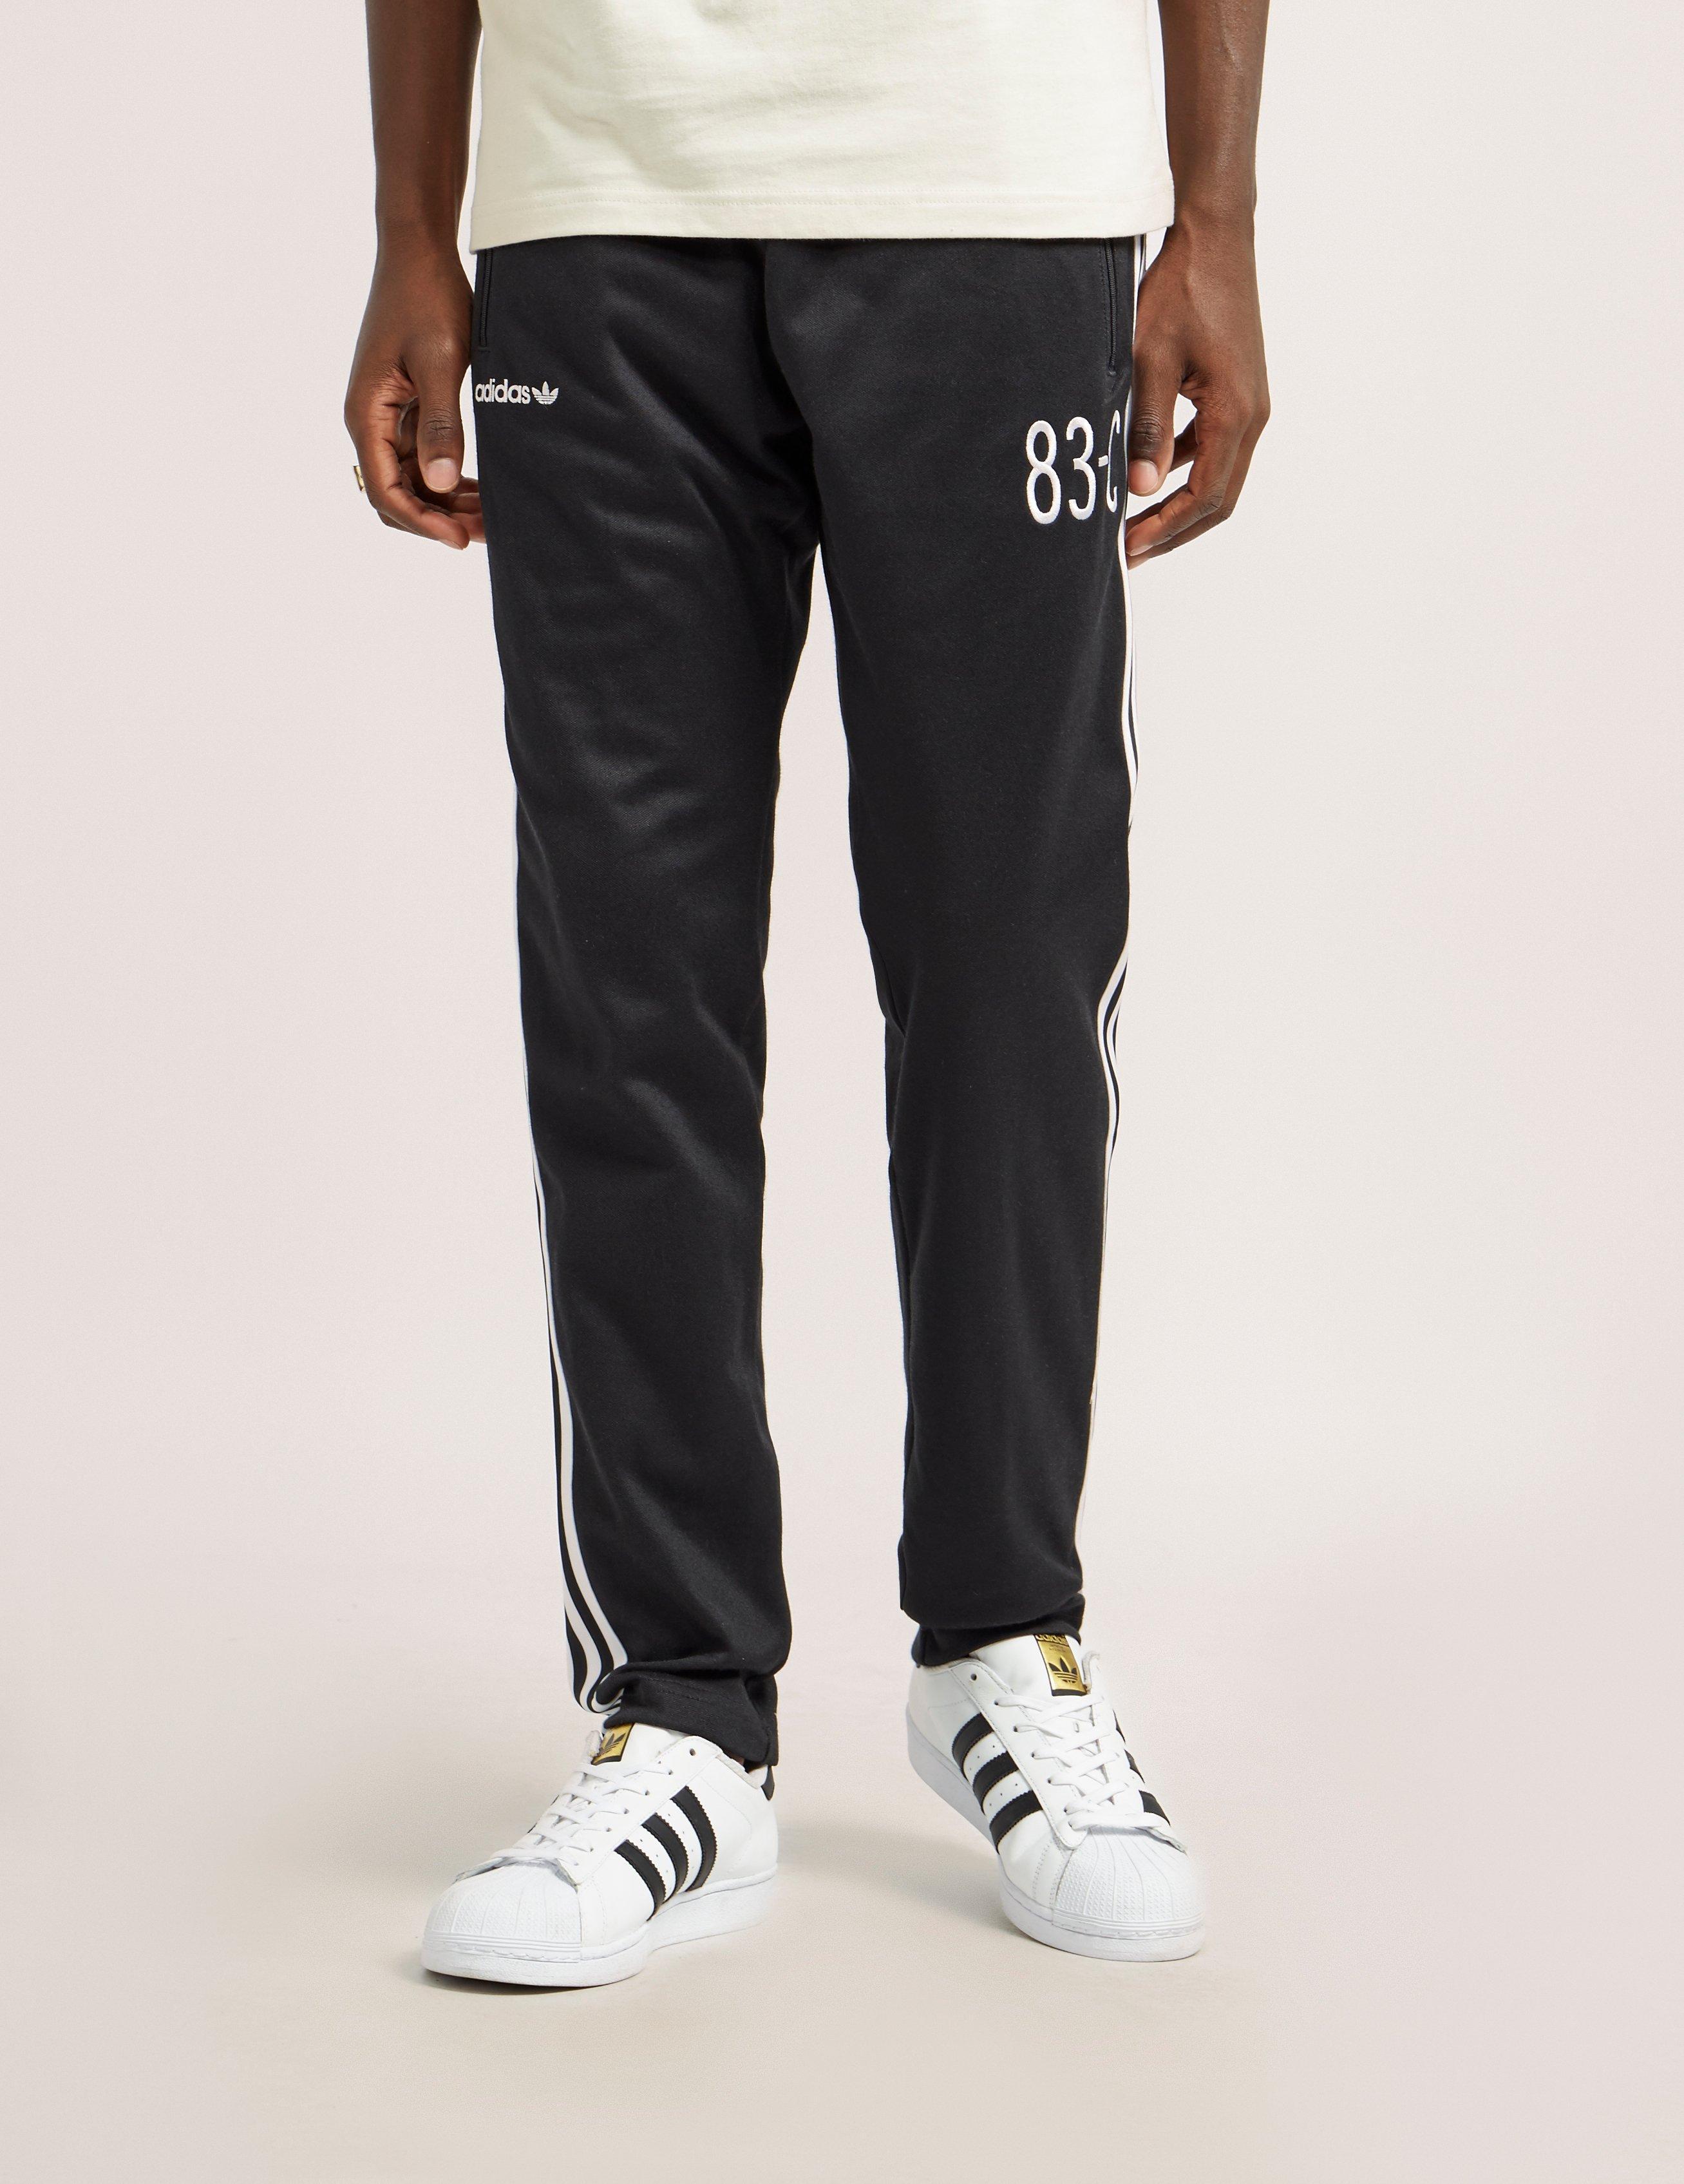 adidas 83 c track pants black